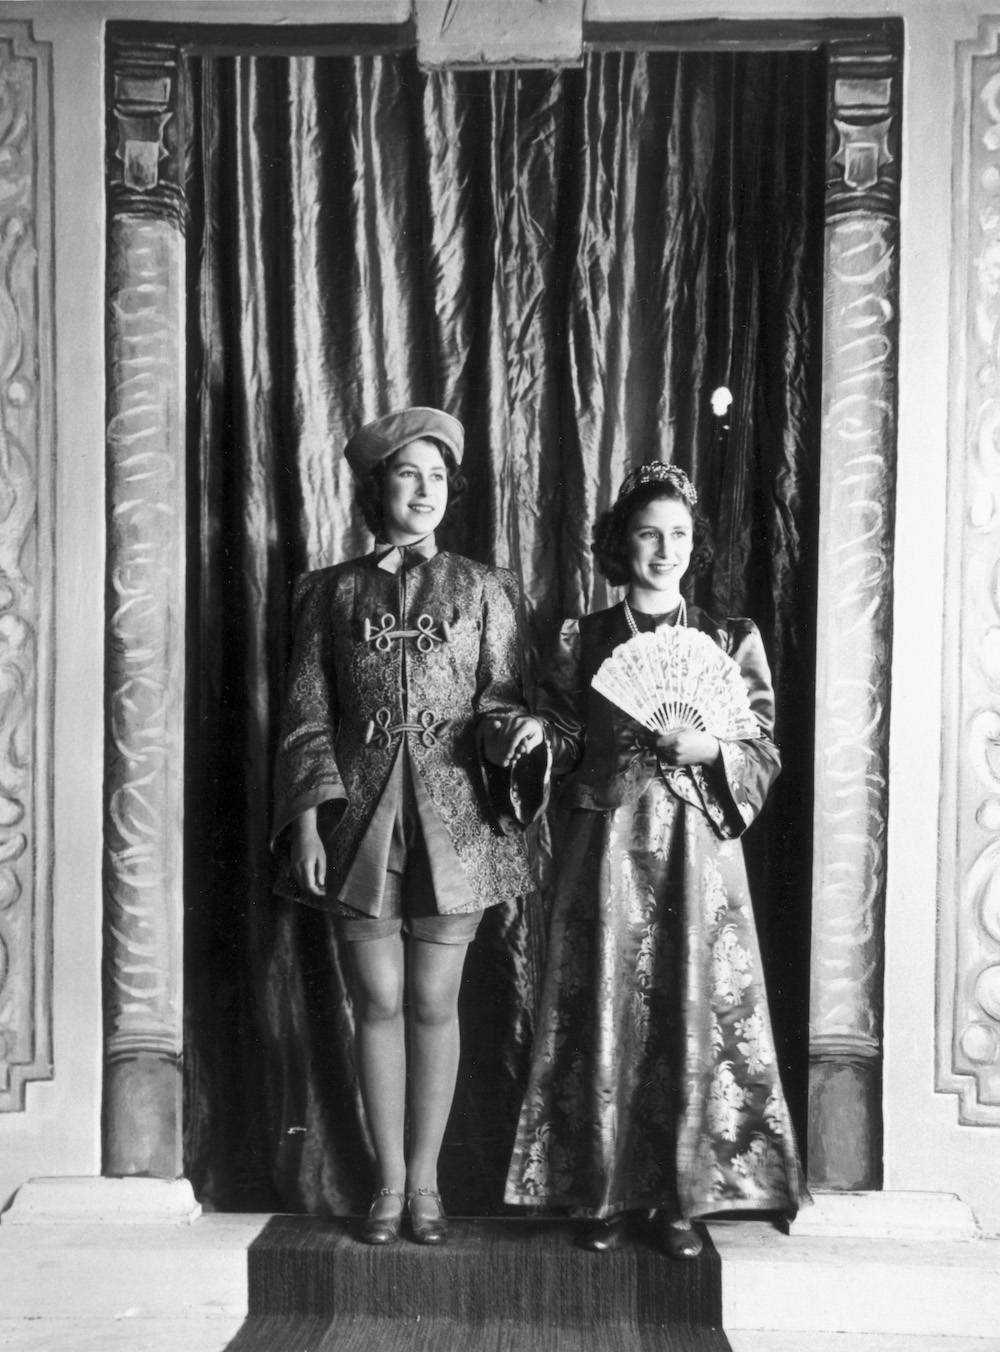 Elżbieta wraz z siostrą Małgorzatą podczas nadwornego spektaklu, 1943 rok (Fot. Getty Images)